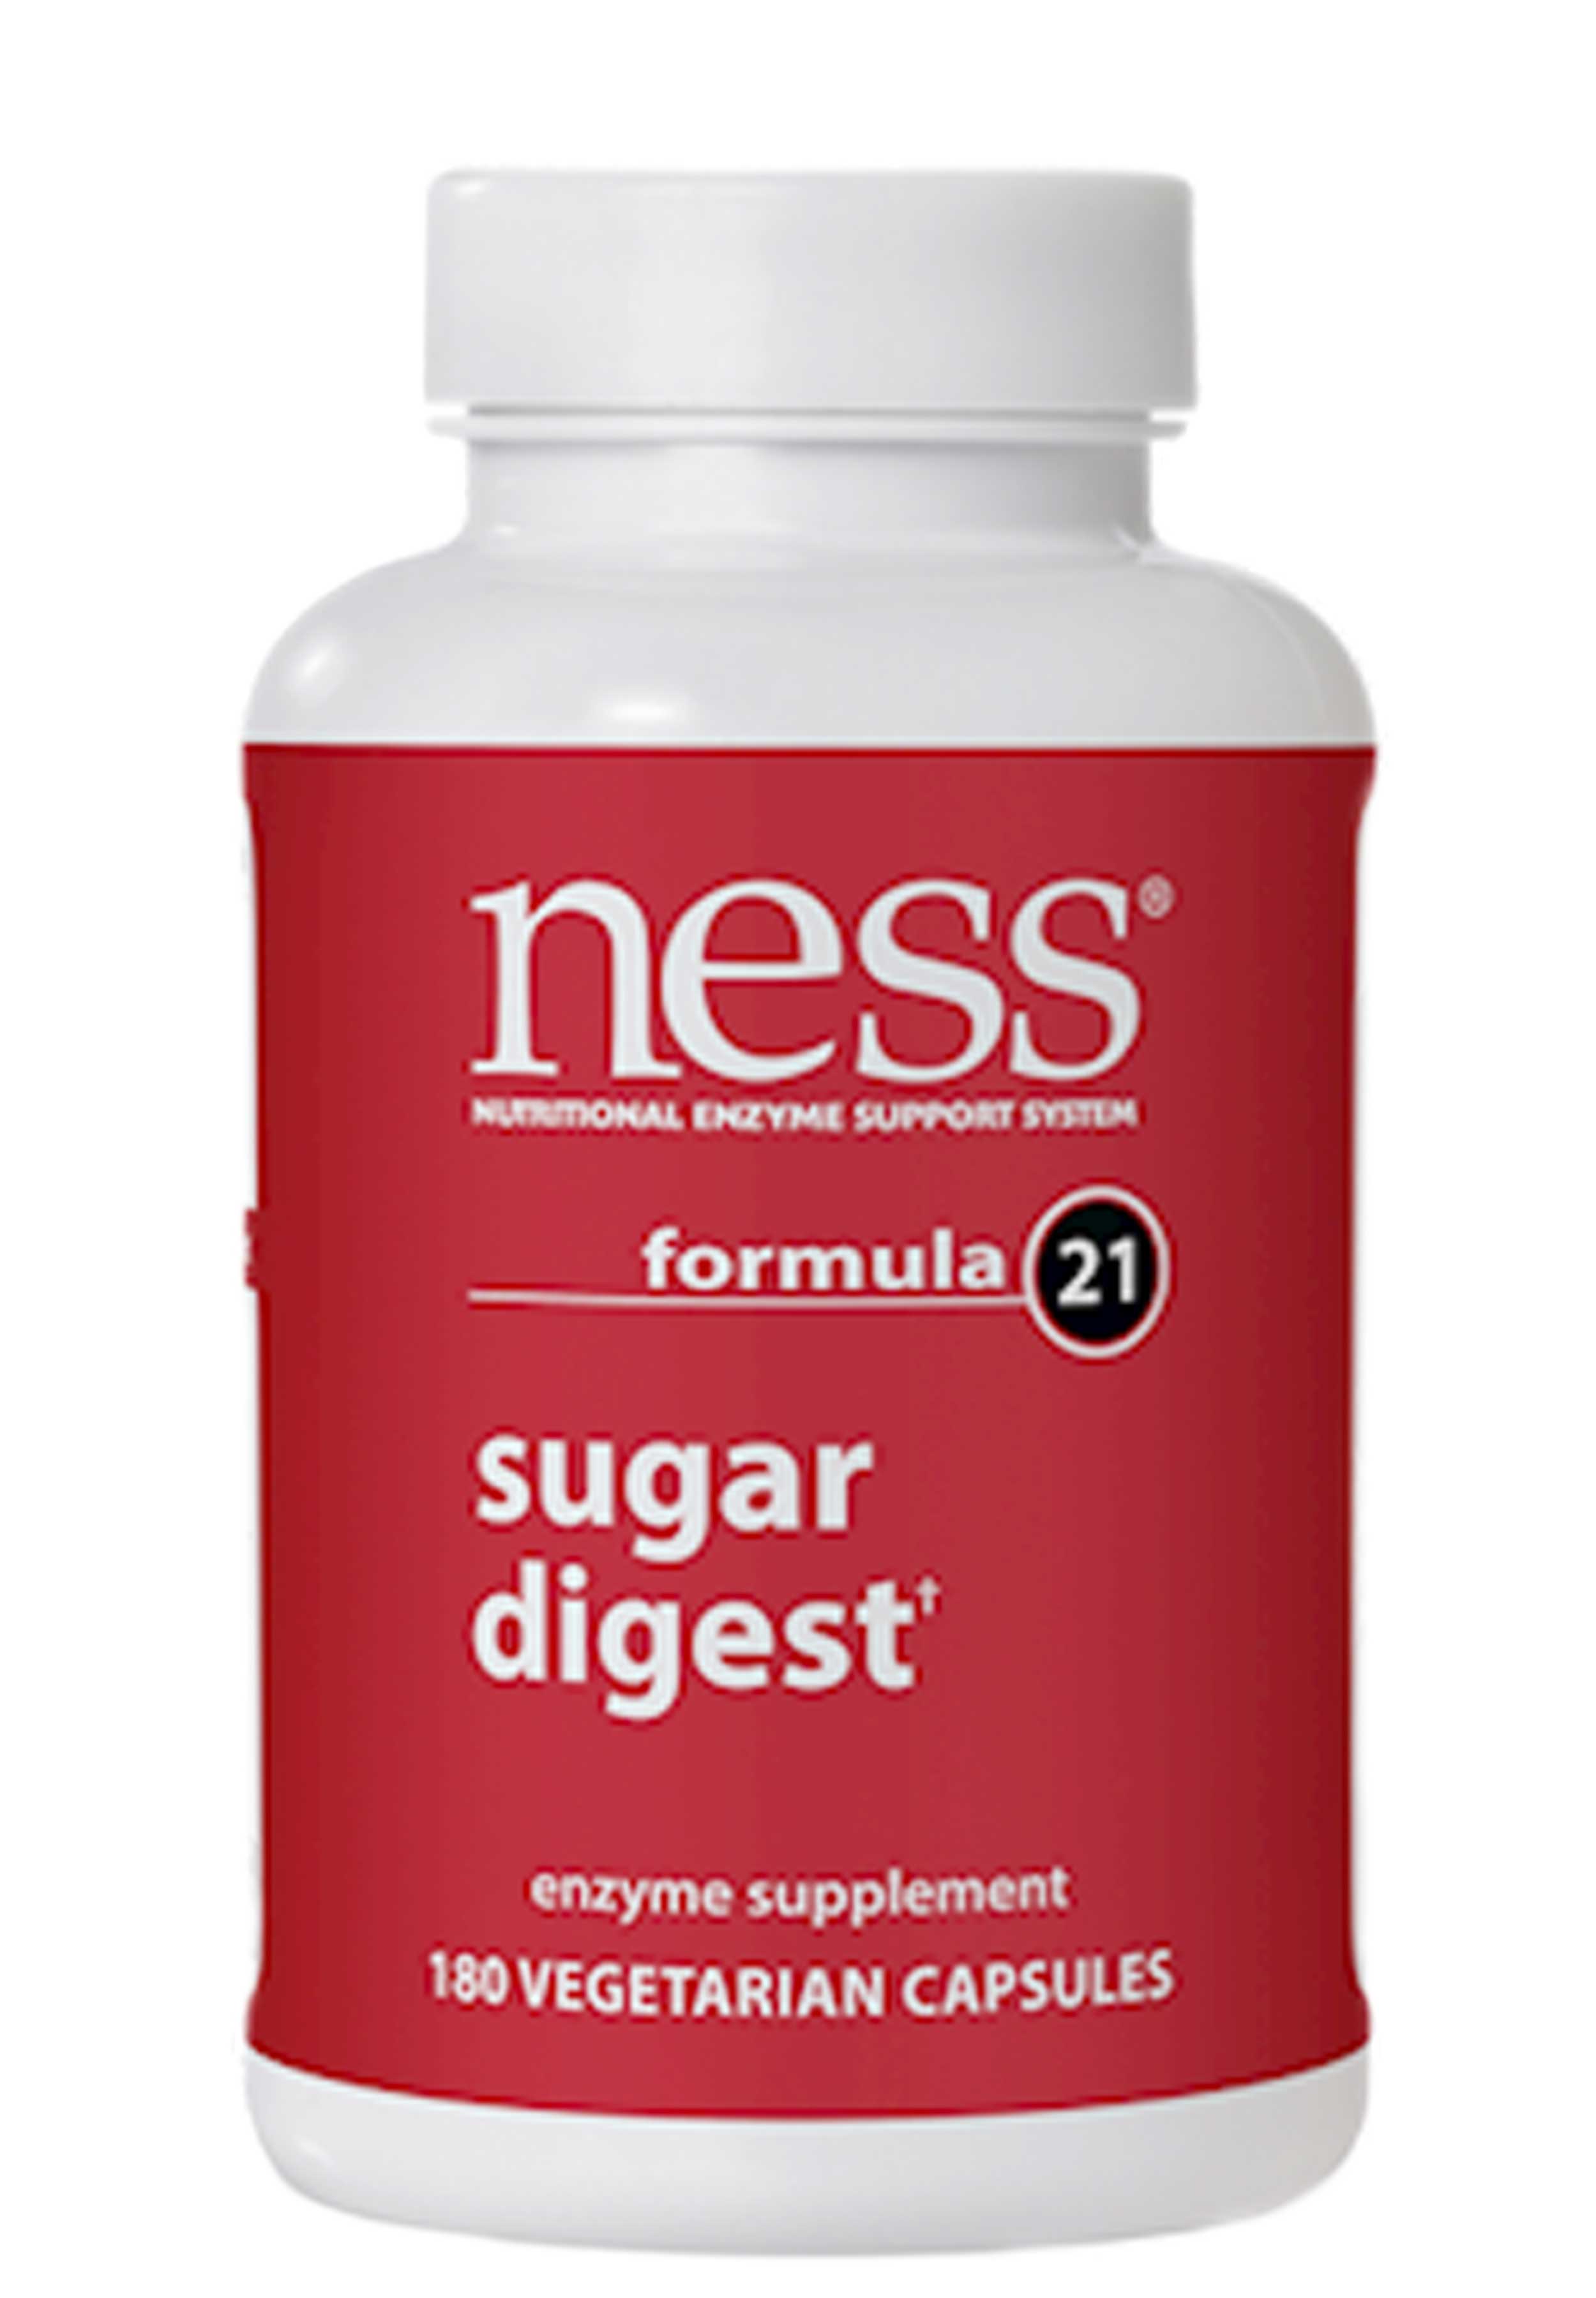 Ness Enzymes Sugar Digest formula 21